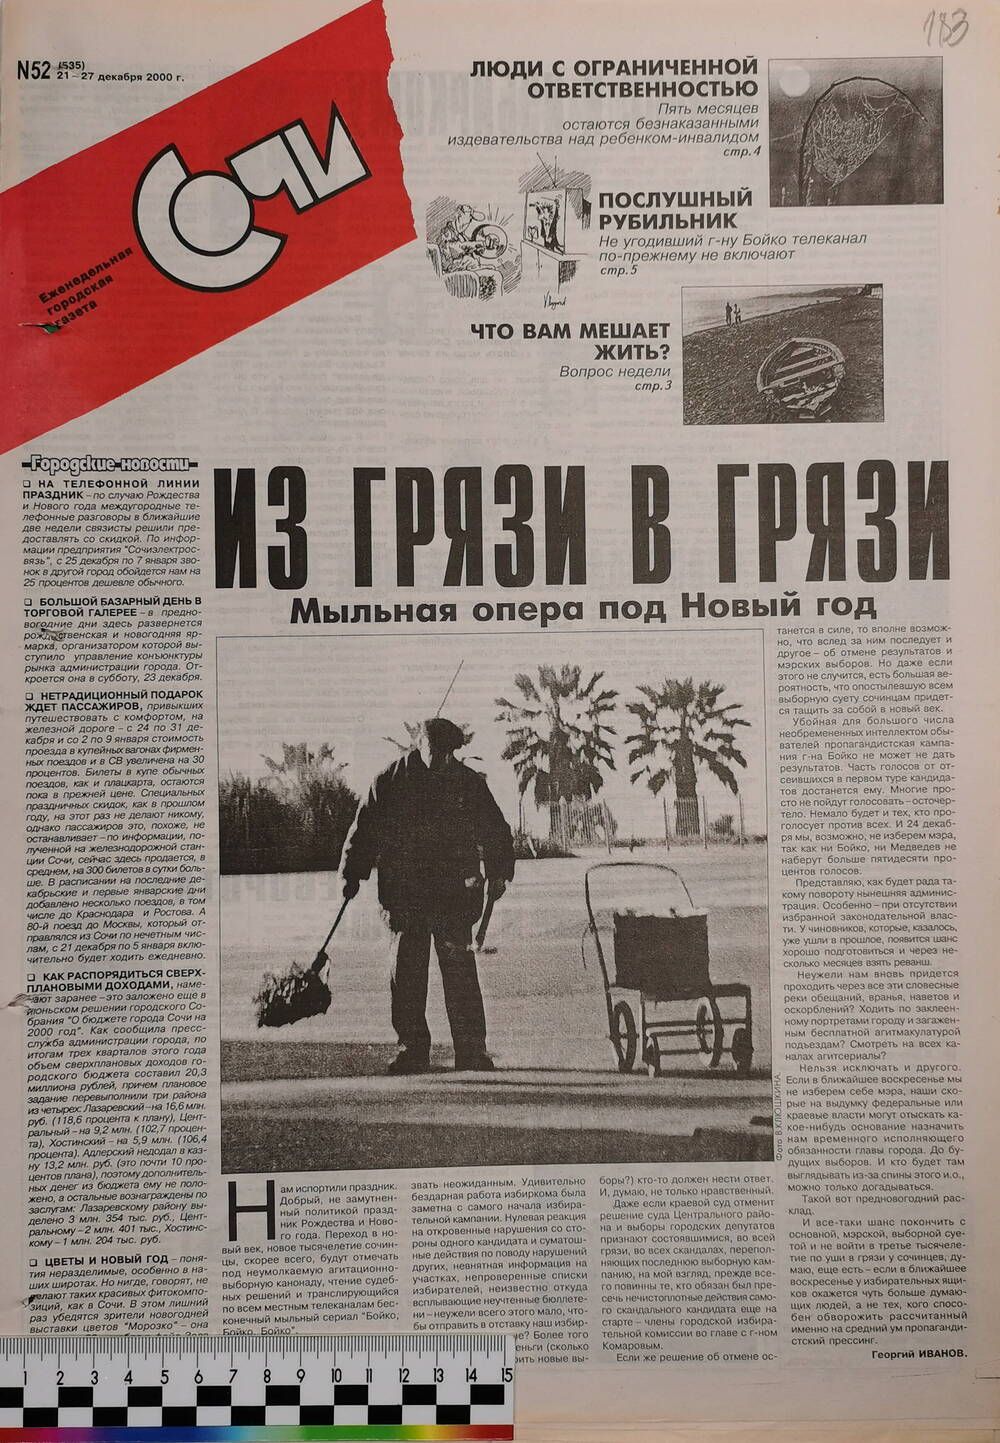 Газета еженедельная городская «Сочи» № 52 (535) с 21 по 27 декабря 2000 г.